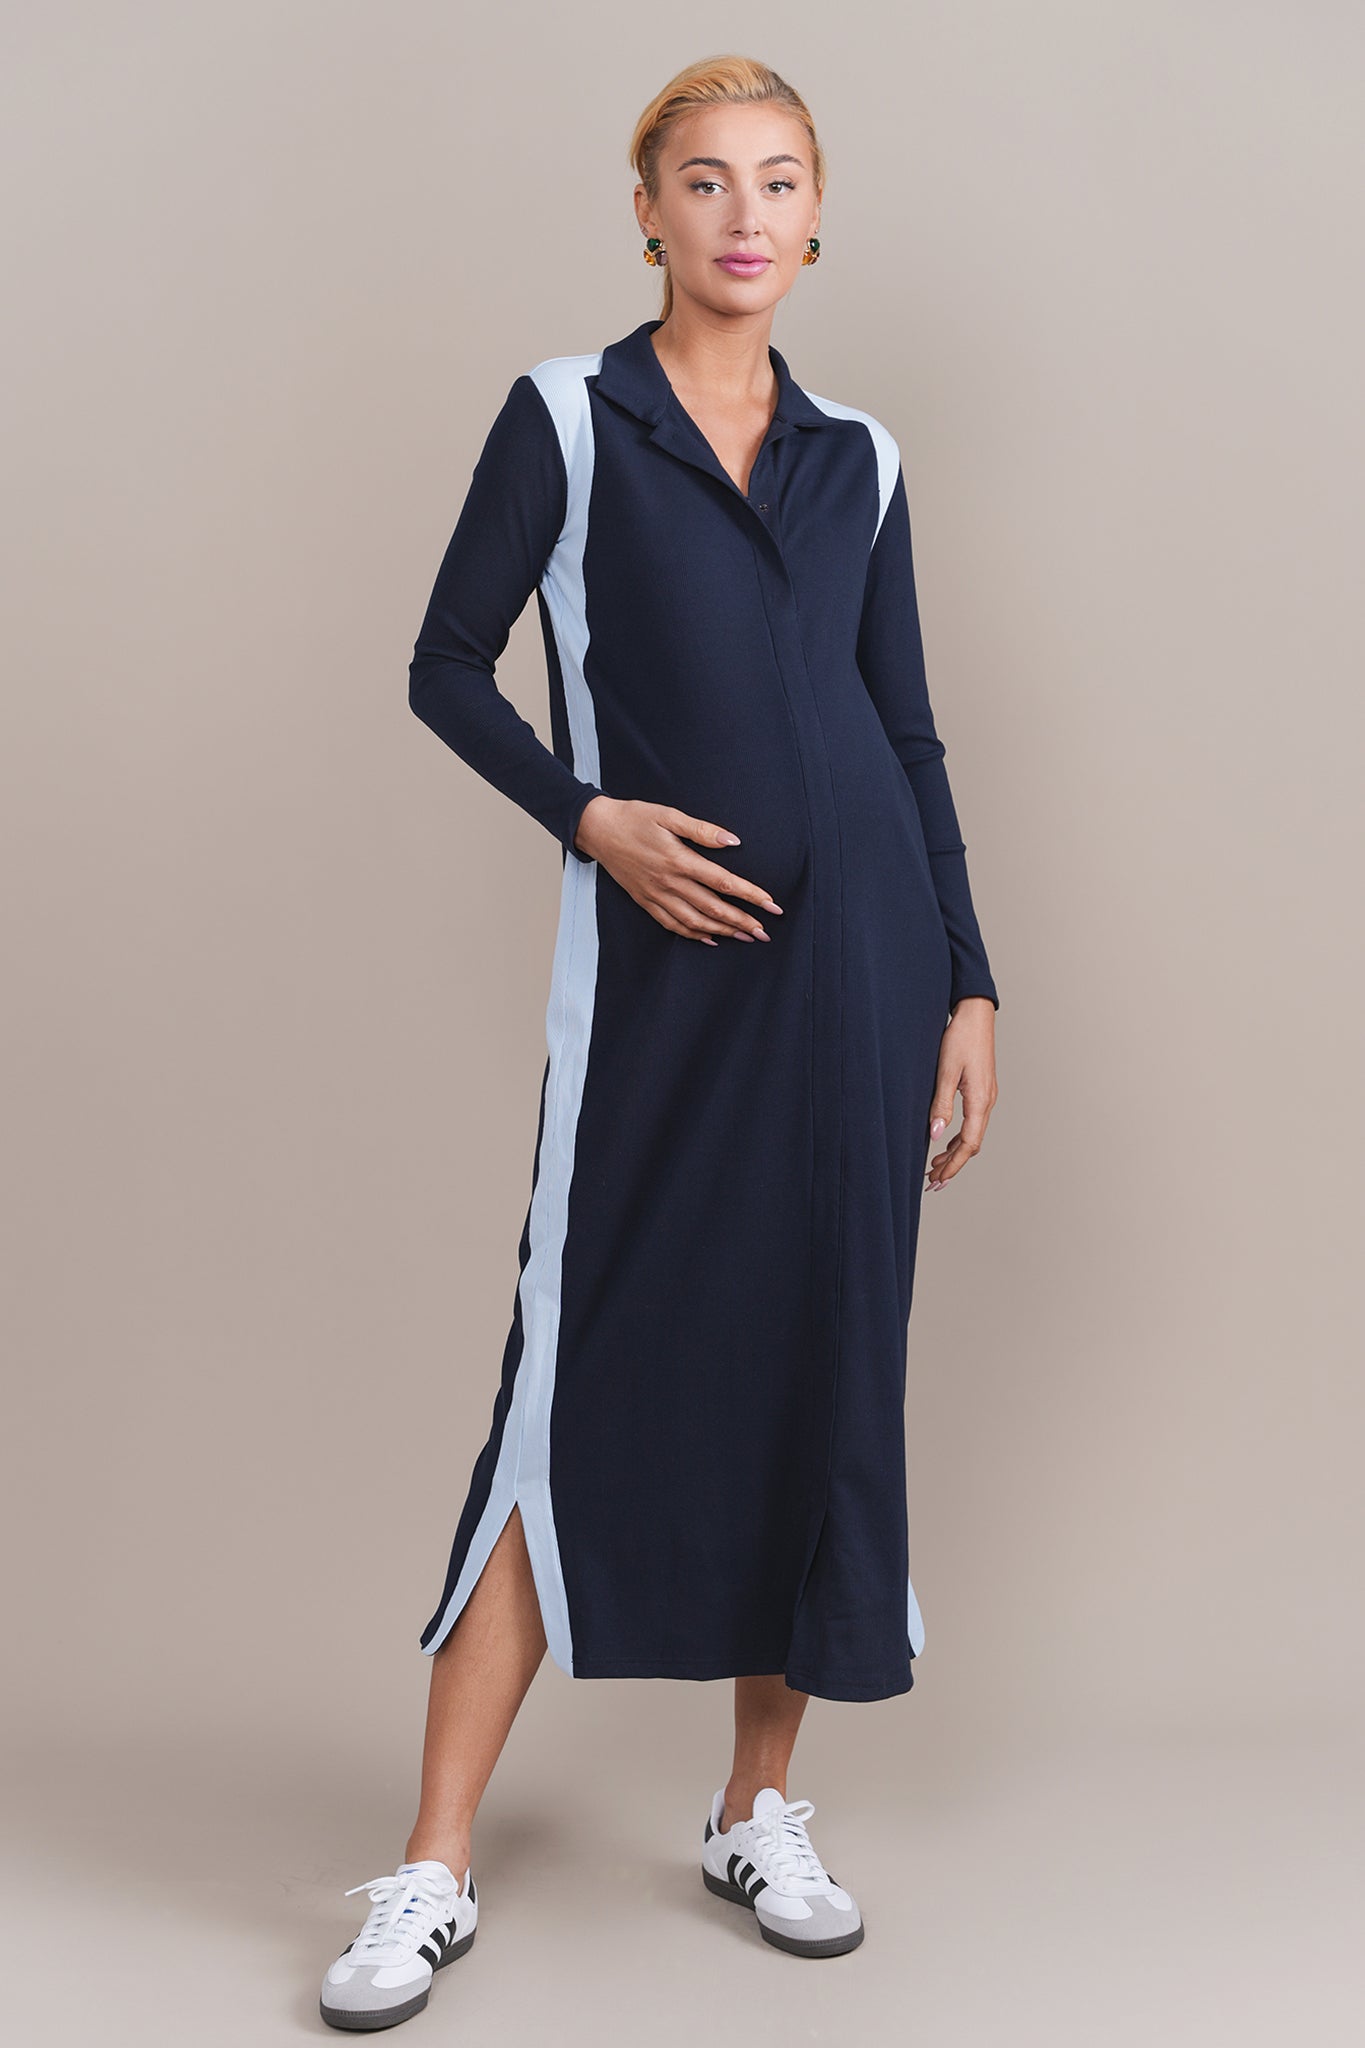 Vanna Maternity Dress in Navy / Light Blue